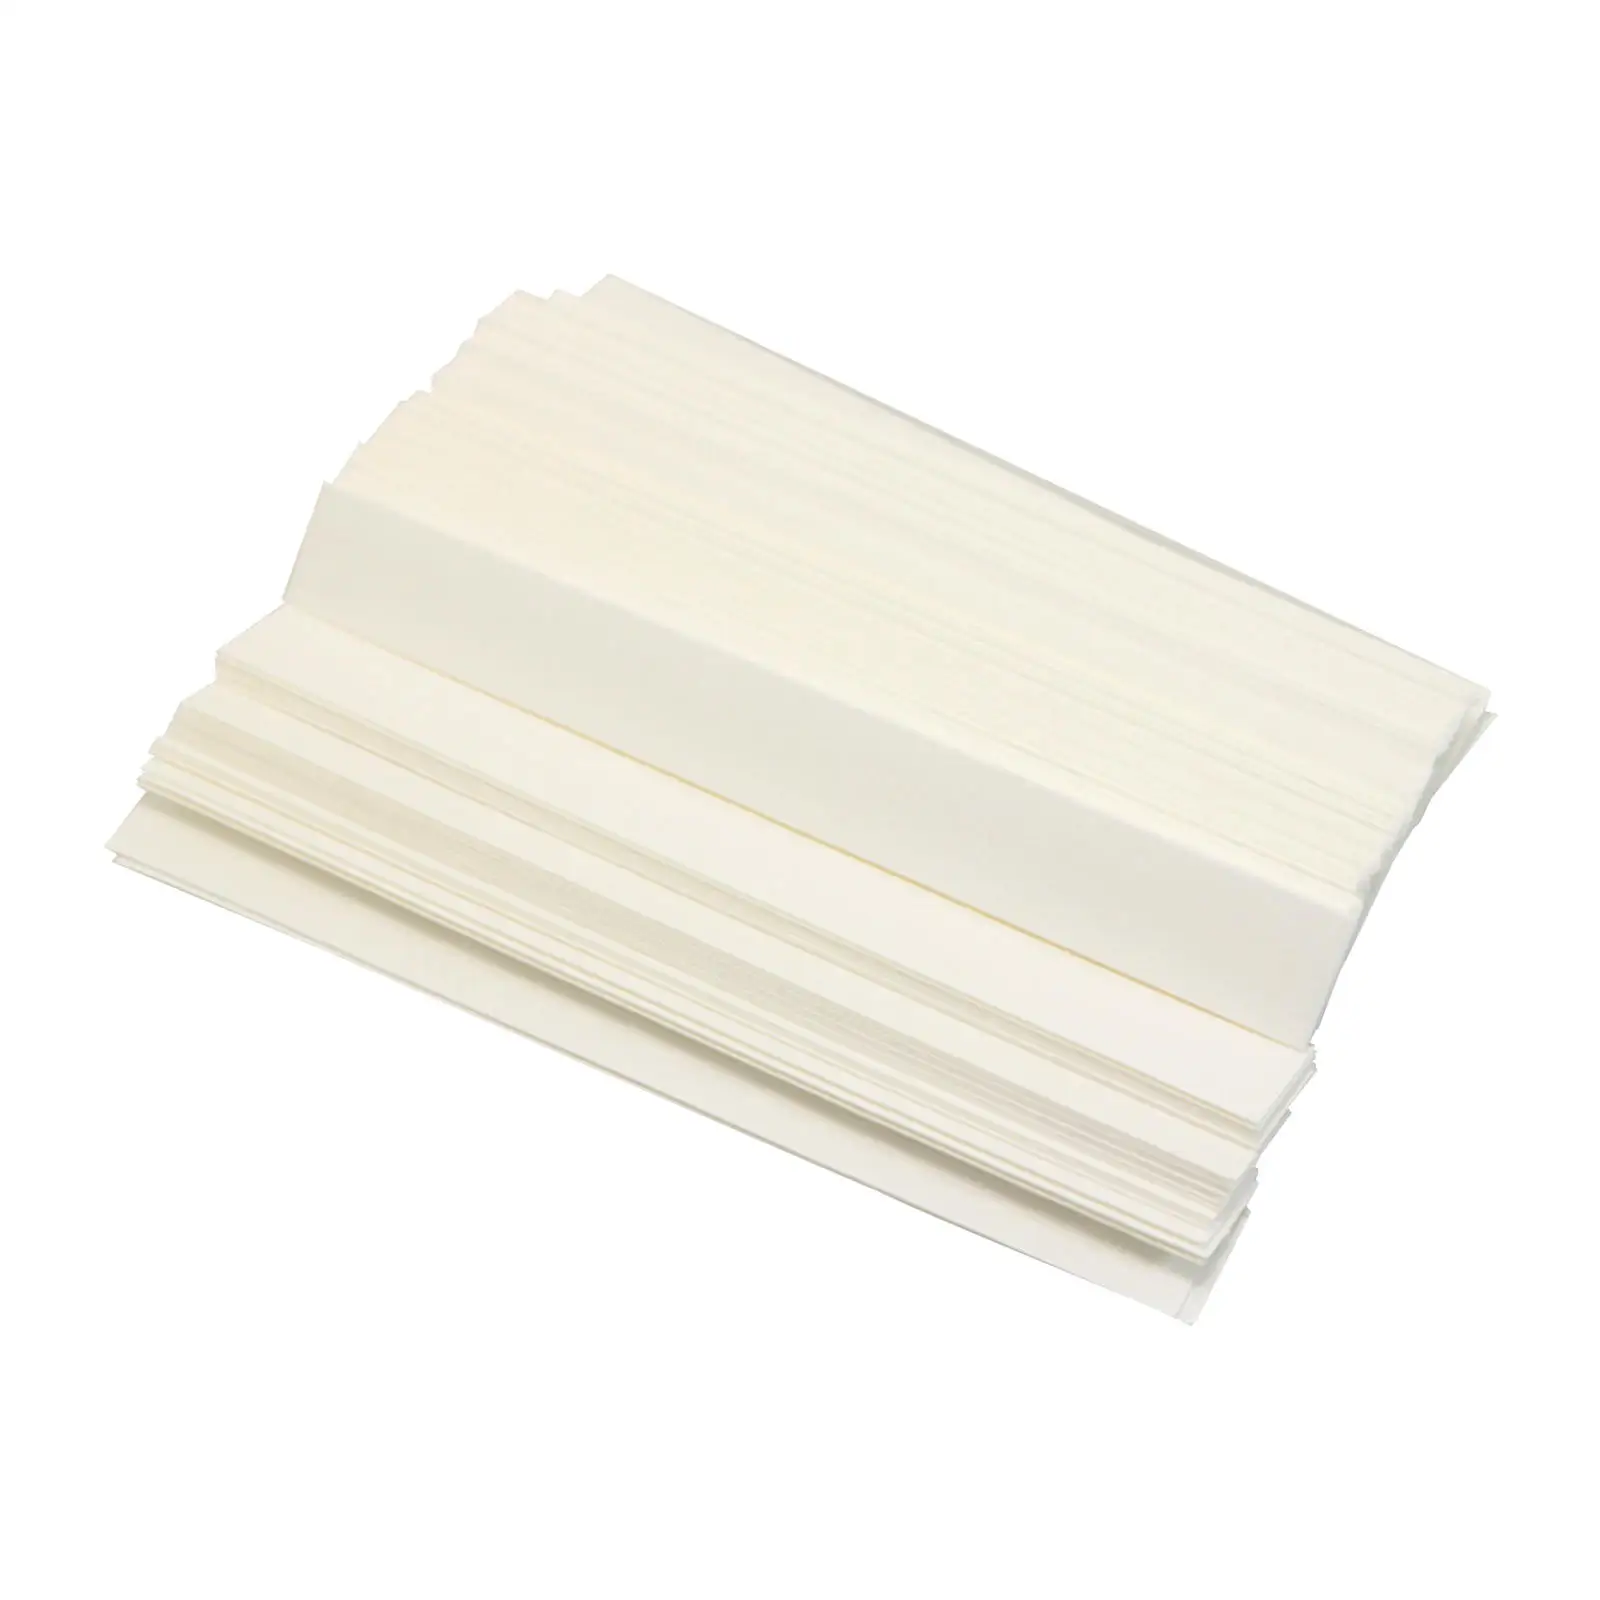 Paquete de 100 tiras de papel de Perfume blancas para aromaterapia duraderas